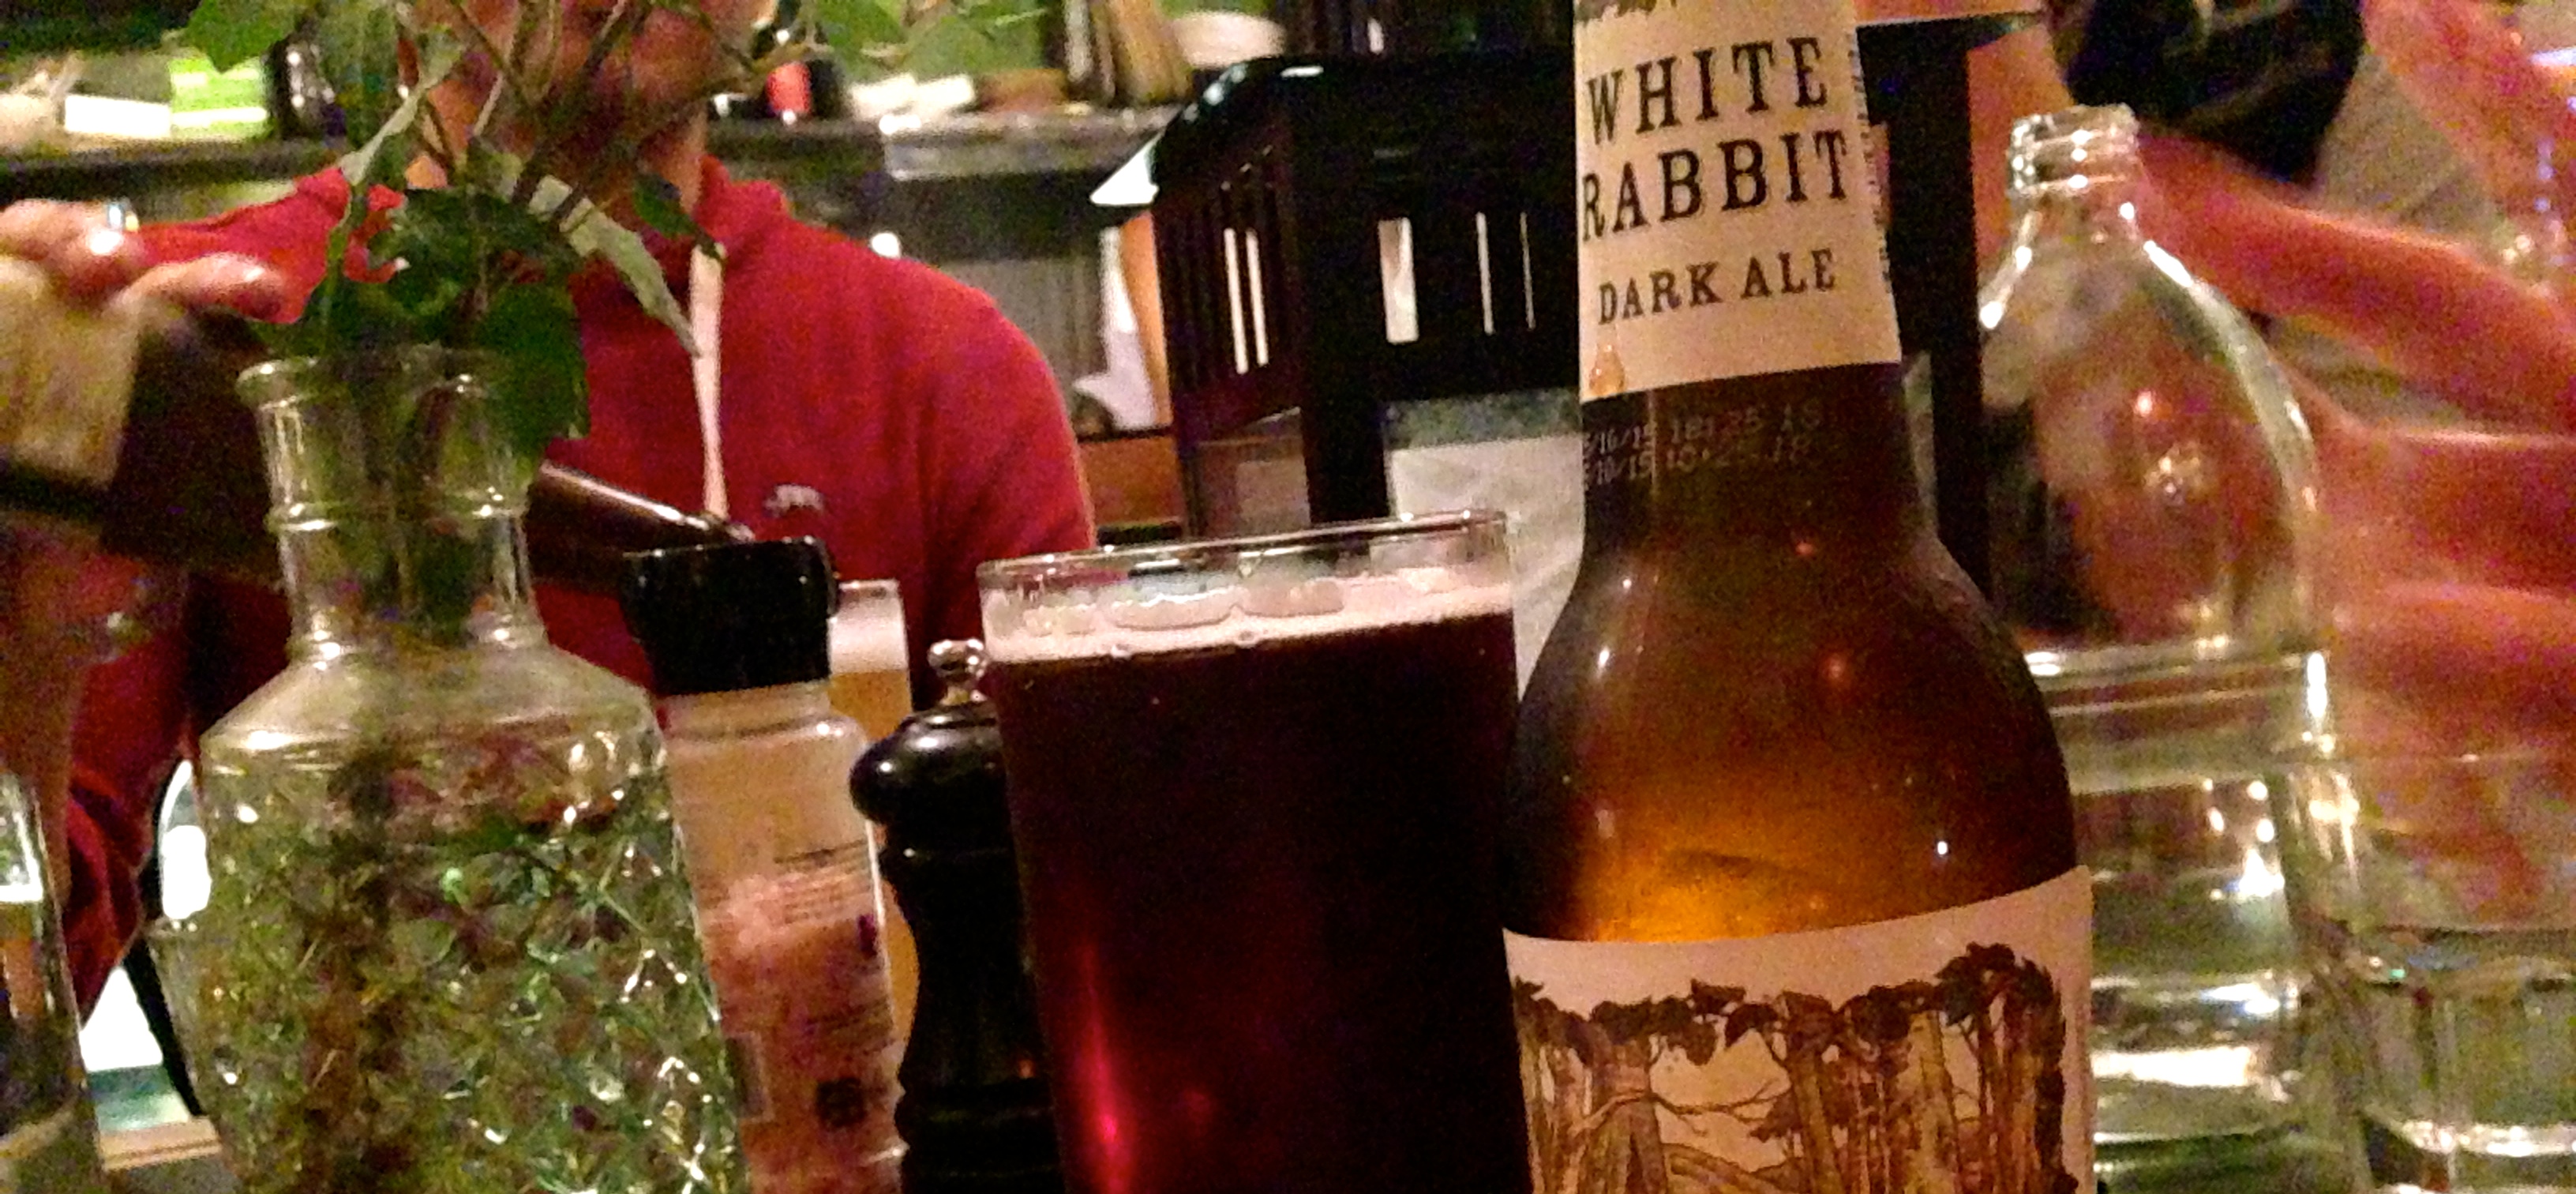 White Rabbit Brewery | Dark Ale